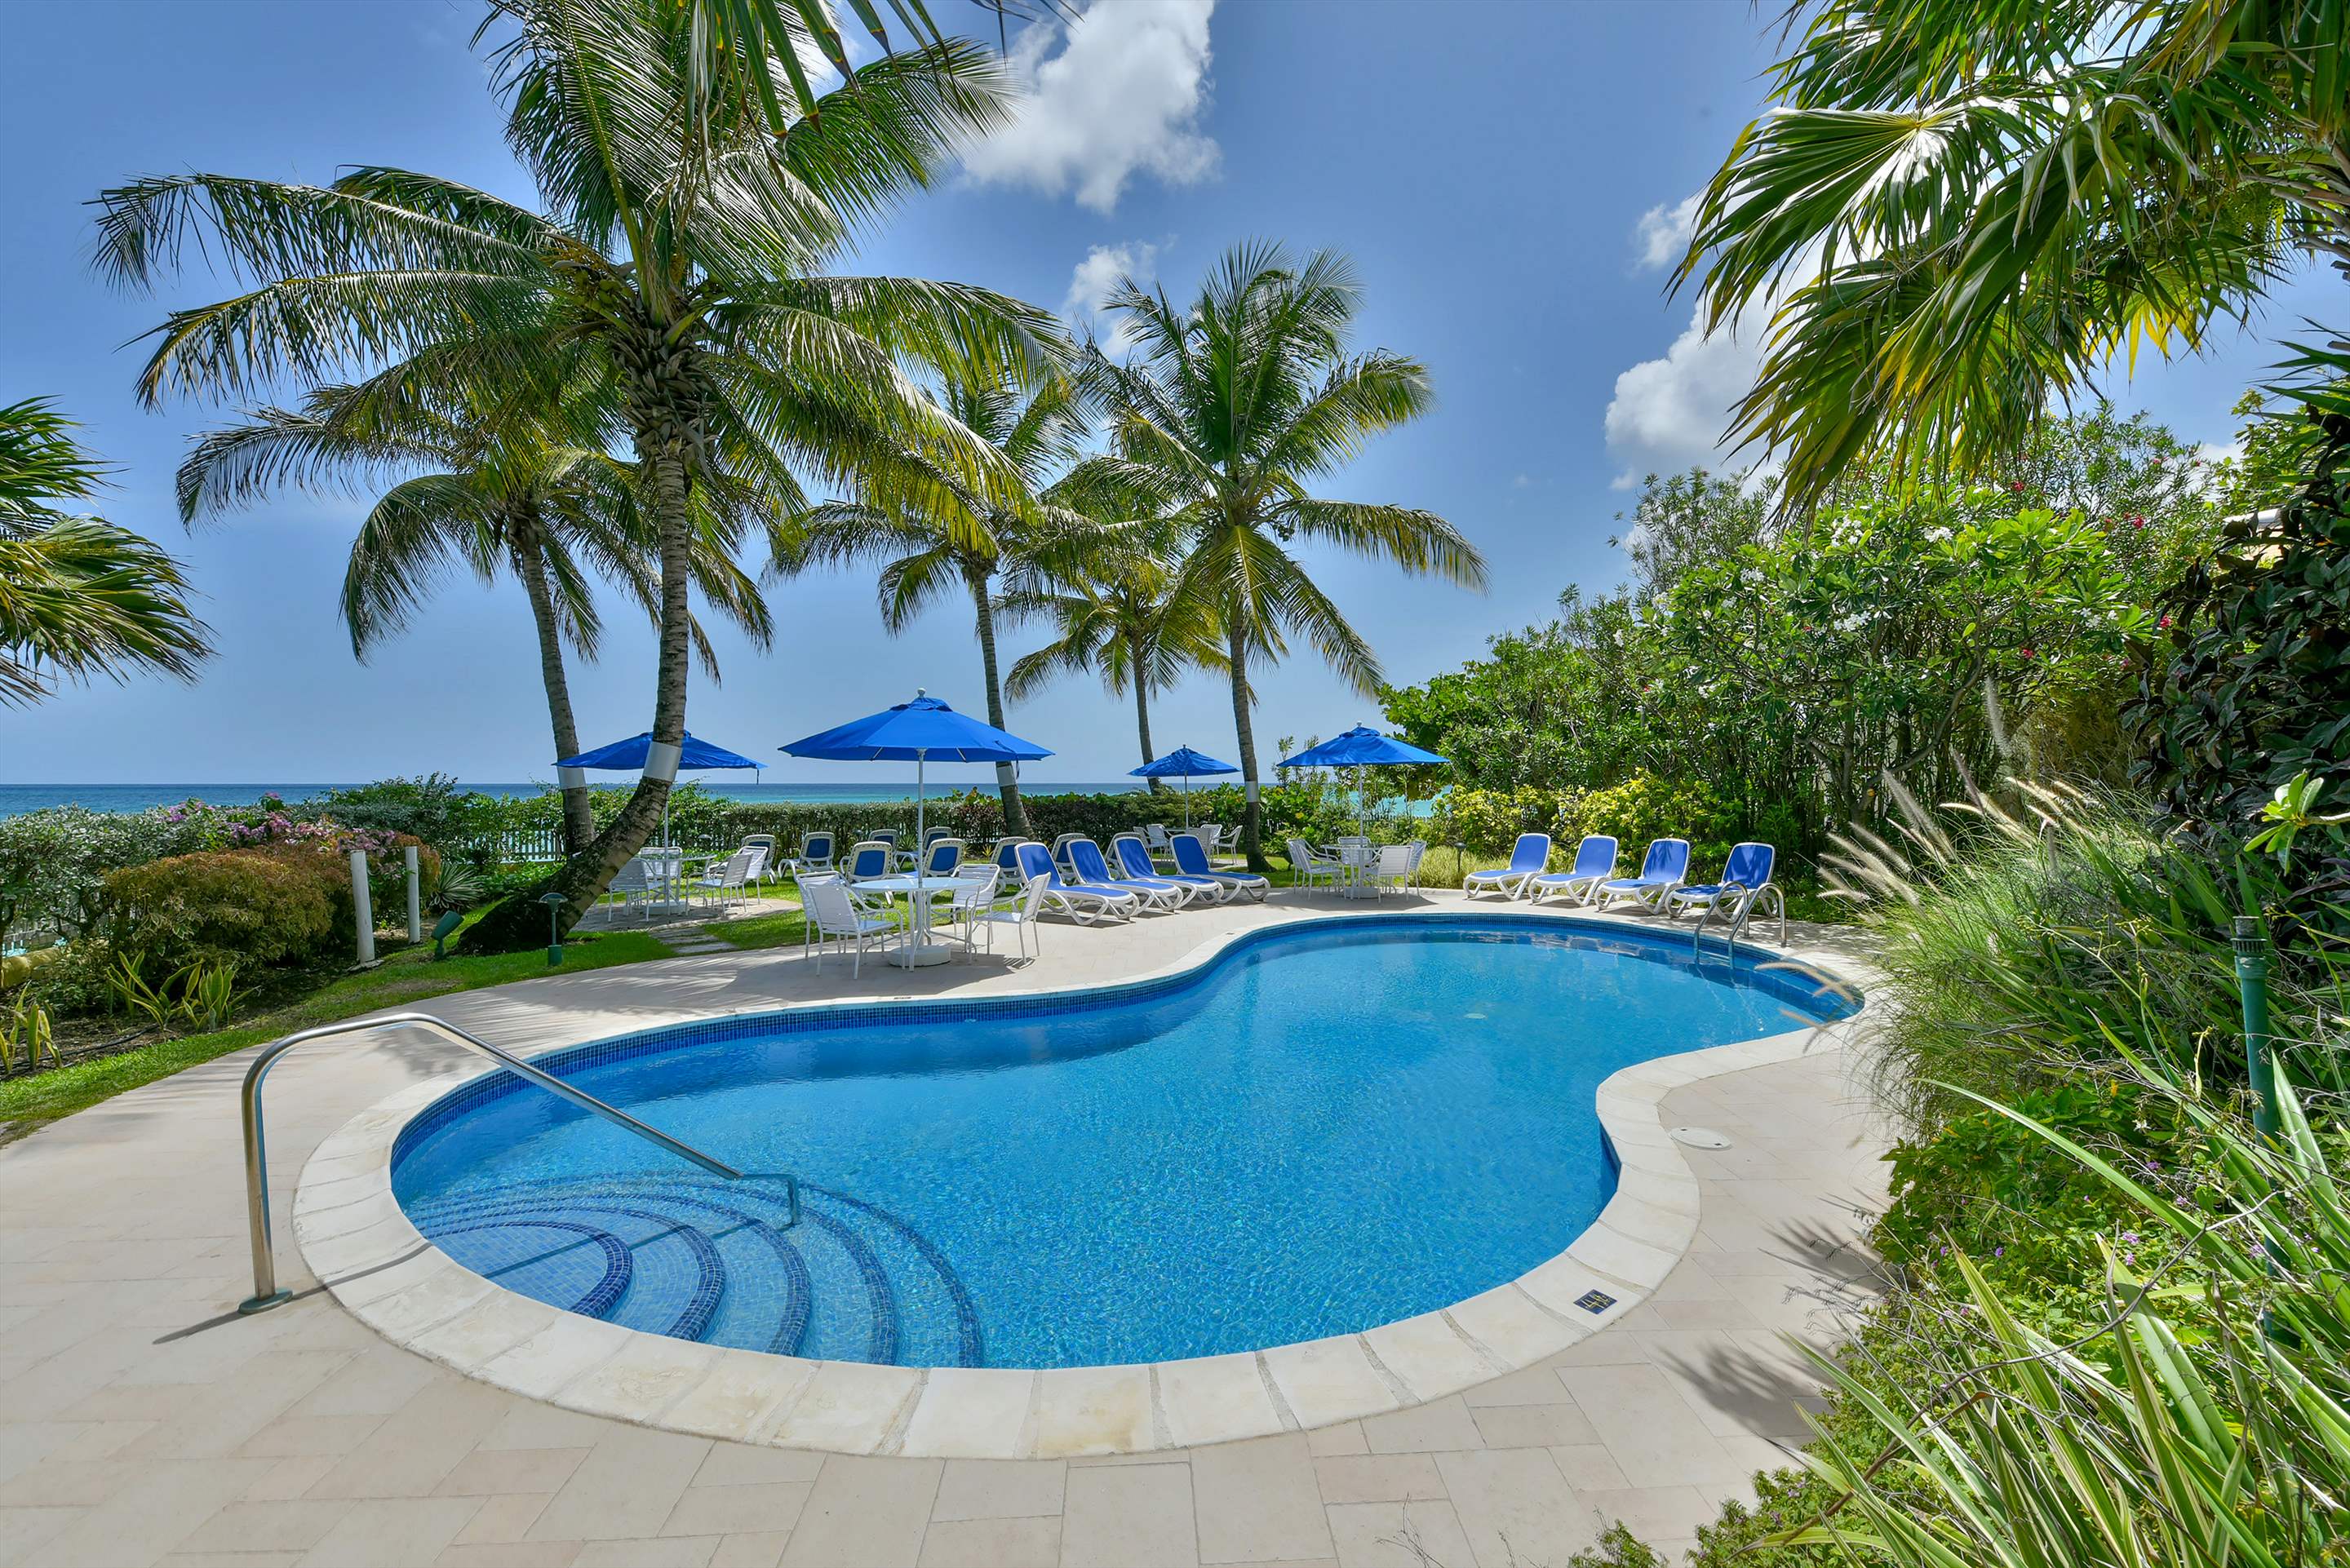 Maxwell Beach Villas 501, 2 bedroom, 2 bedroom villa in St. Lawrence Gap & South Coast, Barbados Photo #8